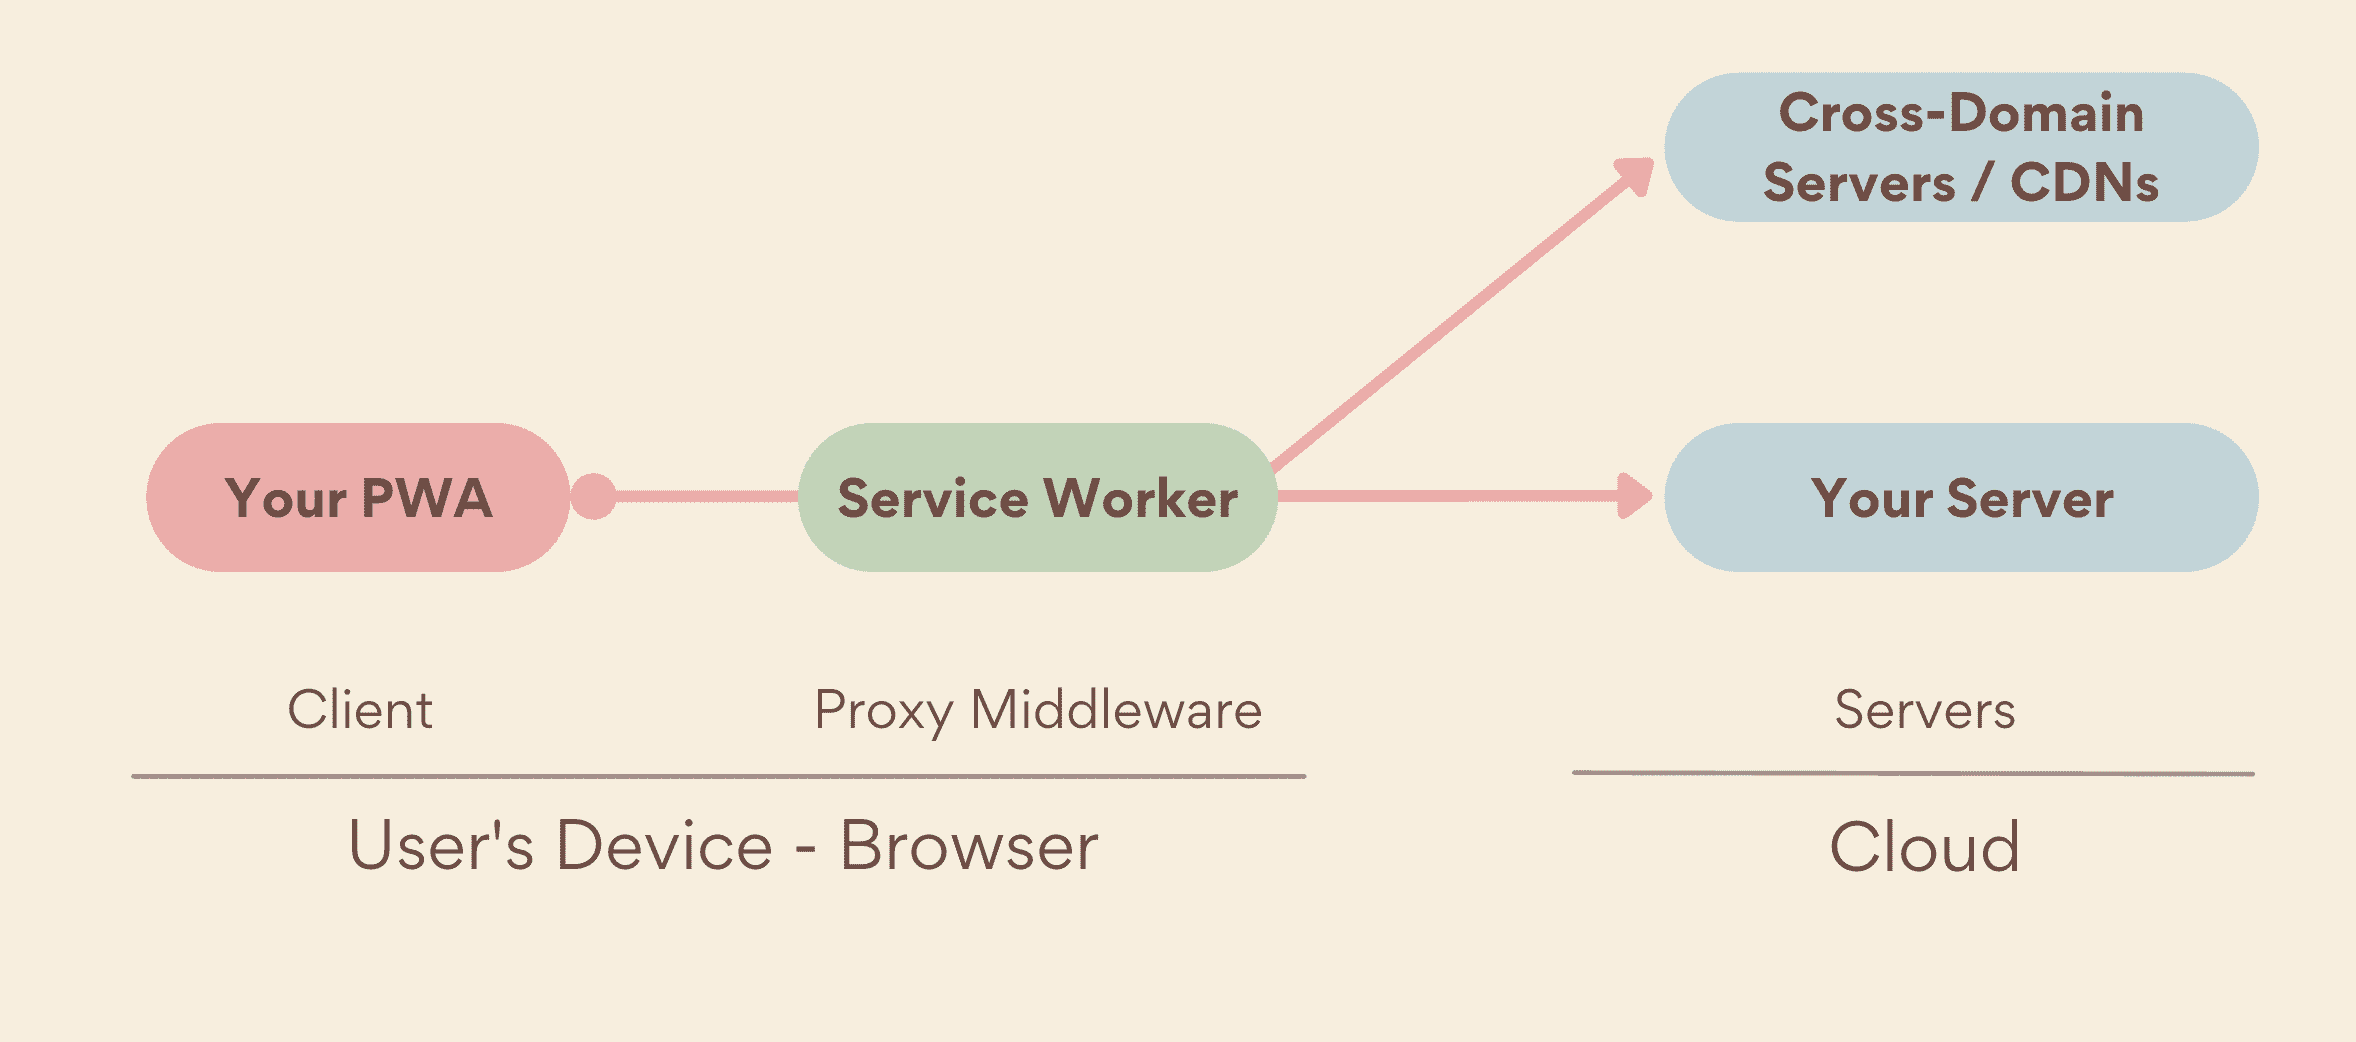 Pekerja layanan sebagai proxy middleware, yang menjalankan sisi perangkat, antara PWA dan server Anda, yang mencakup server Anda sendiri dan server lintas-domain.